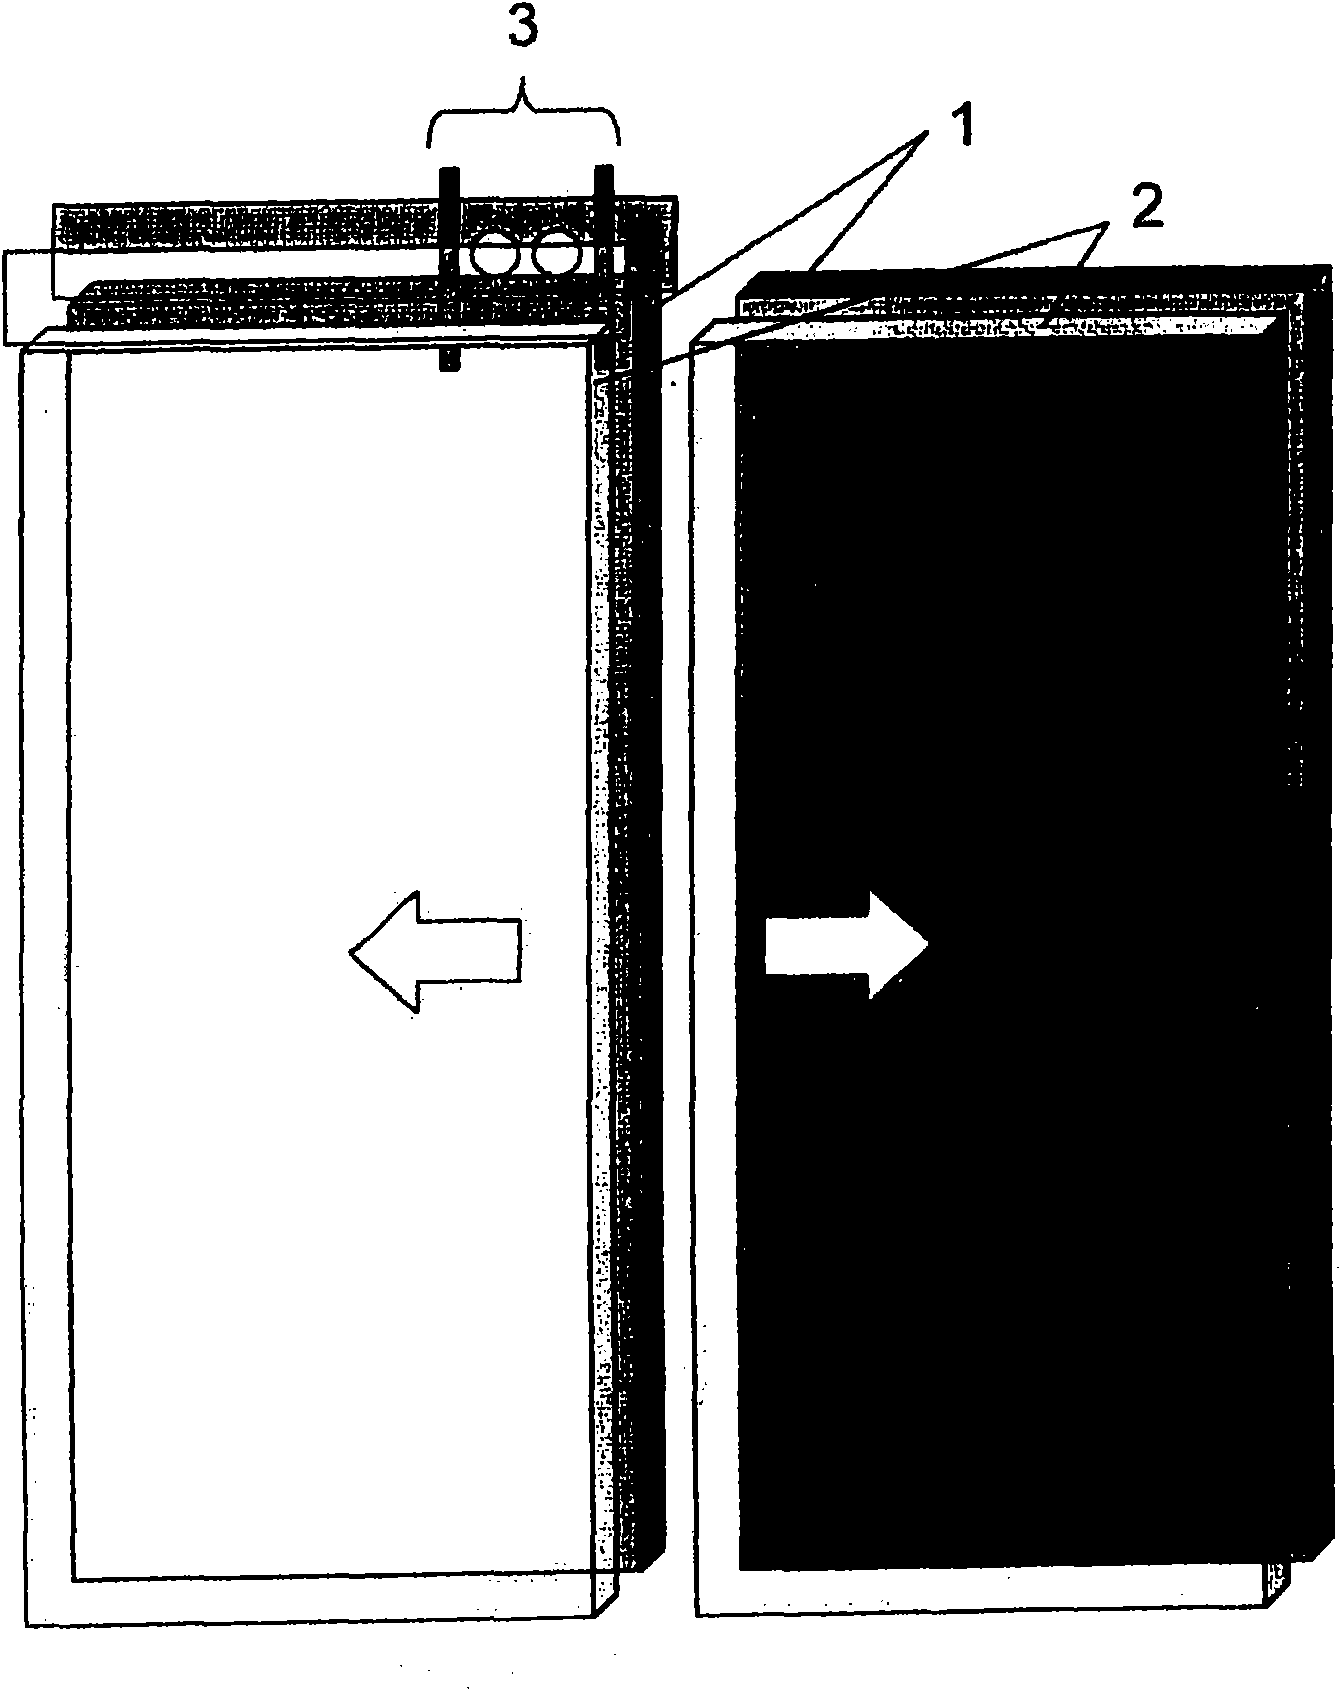 Control device of elevator door